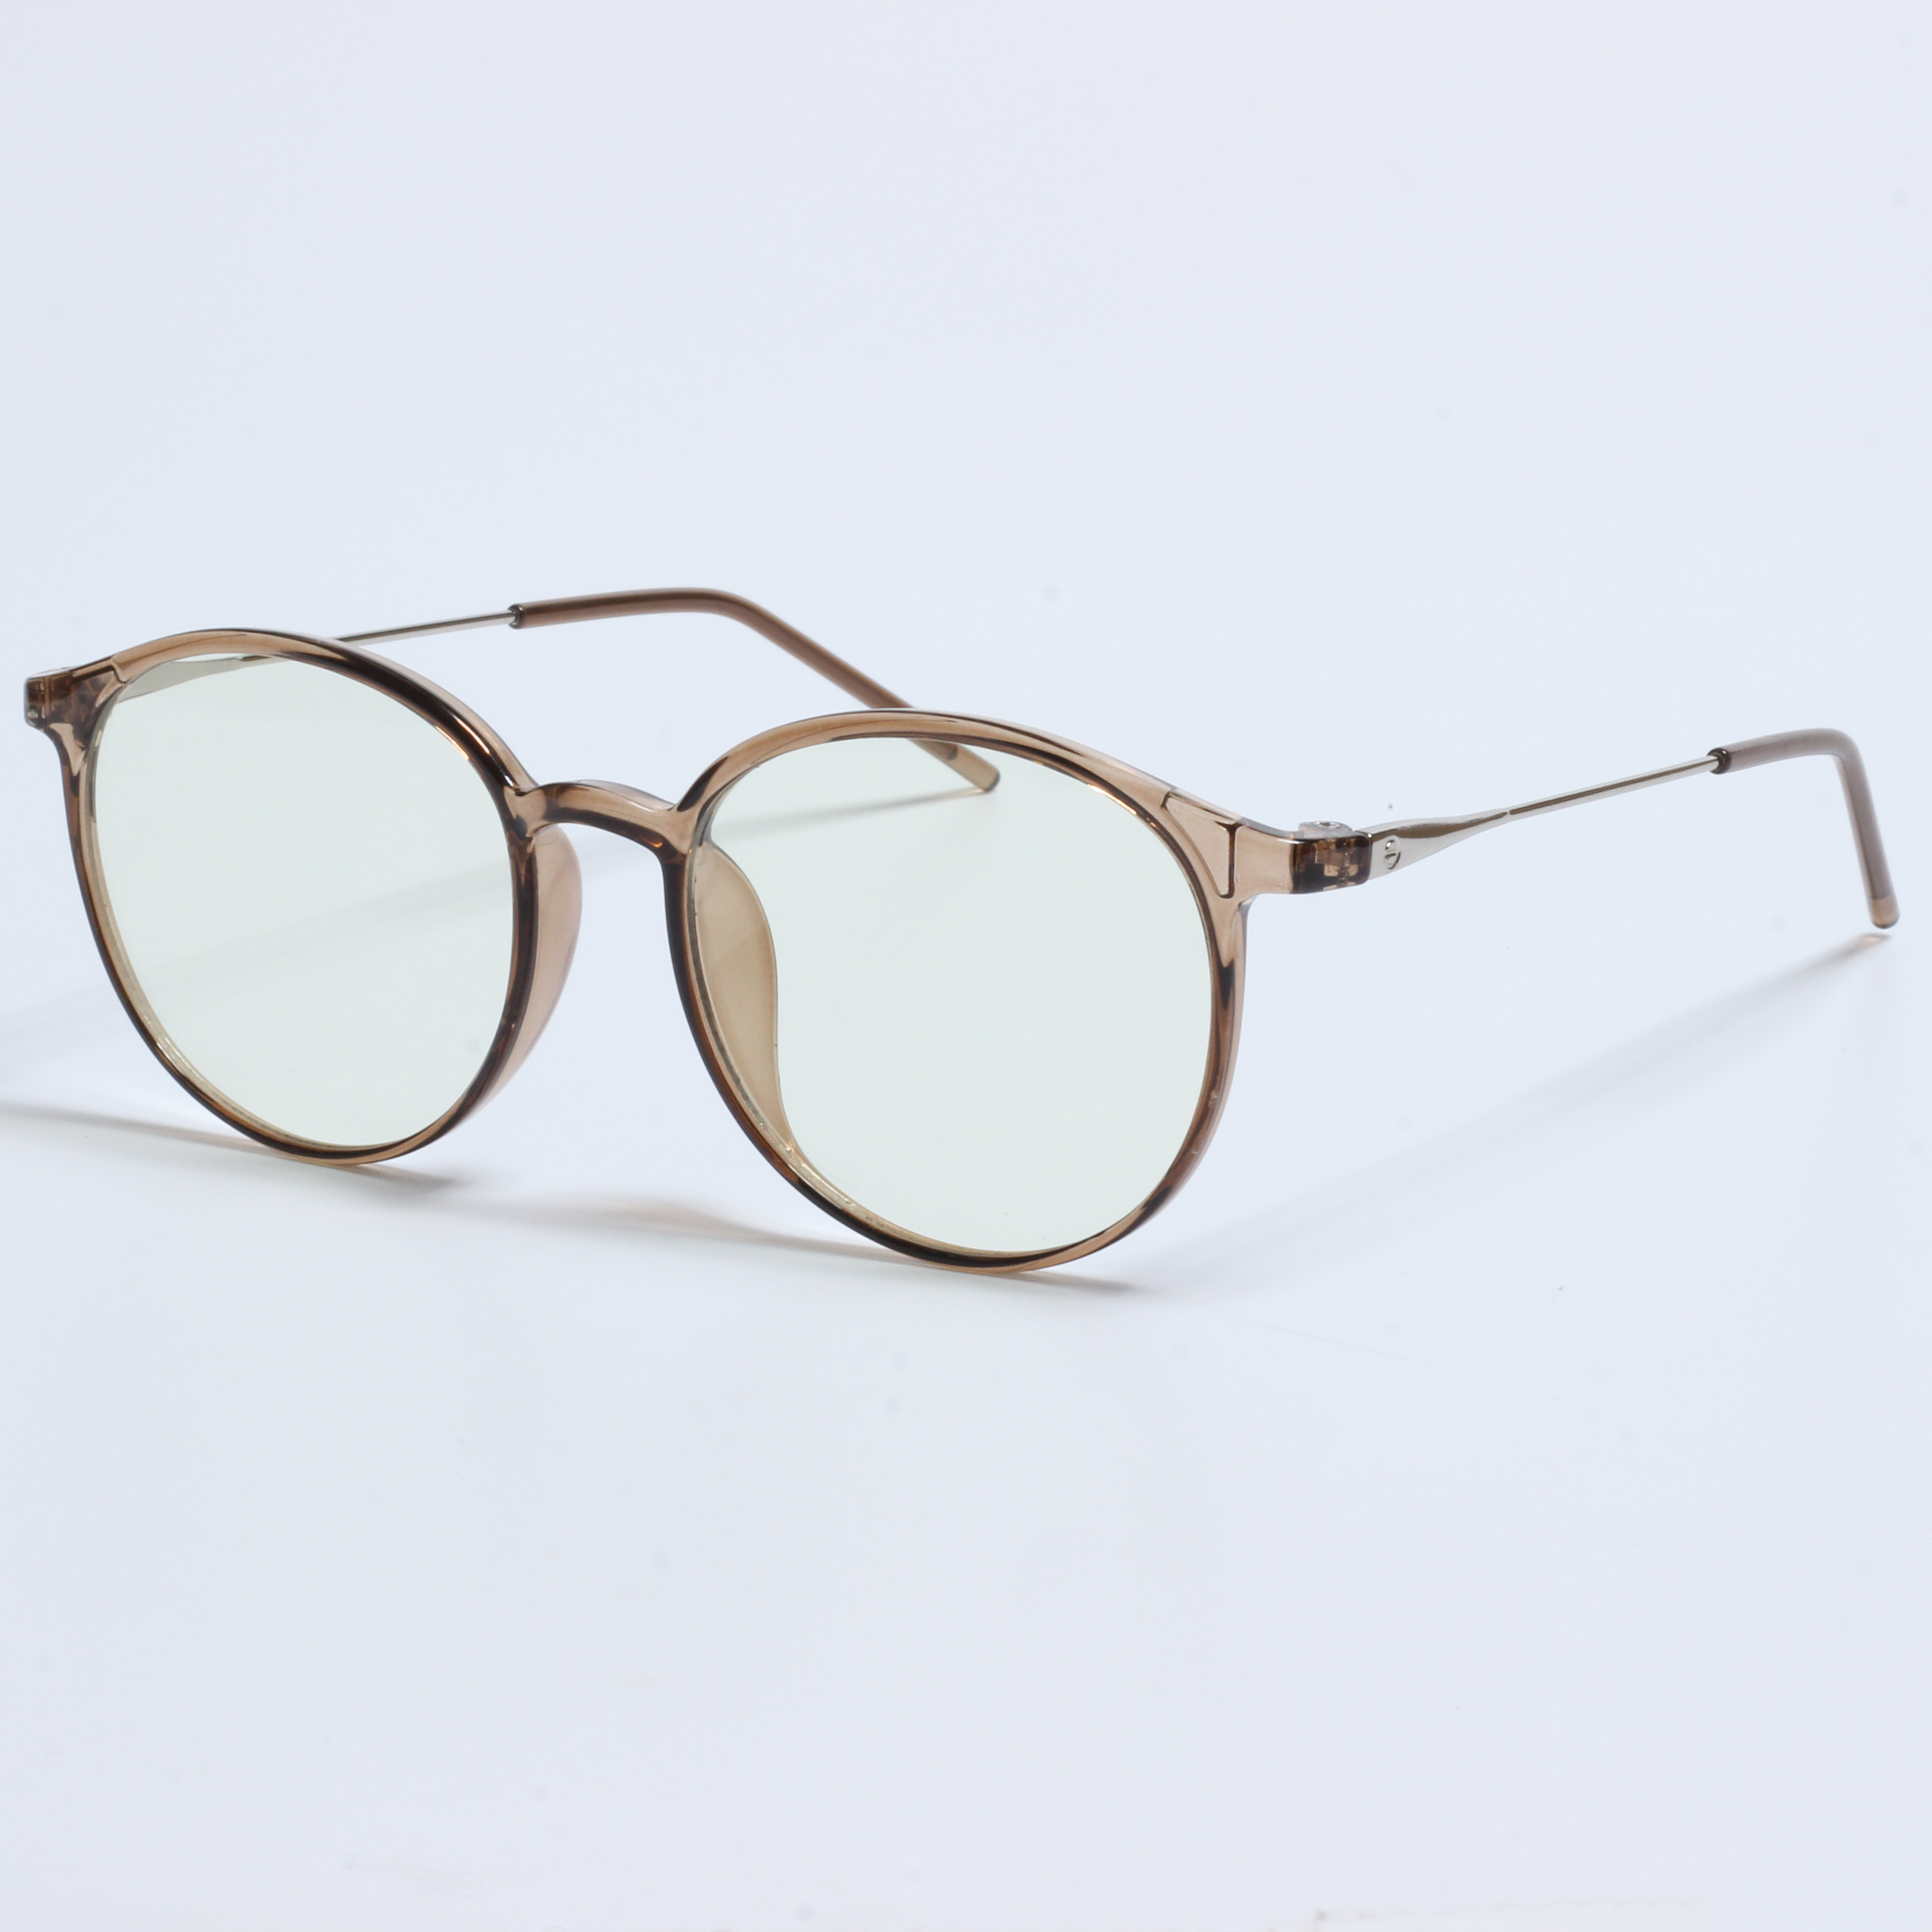 Groothandel brillenframe TR optyske frames (5)